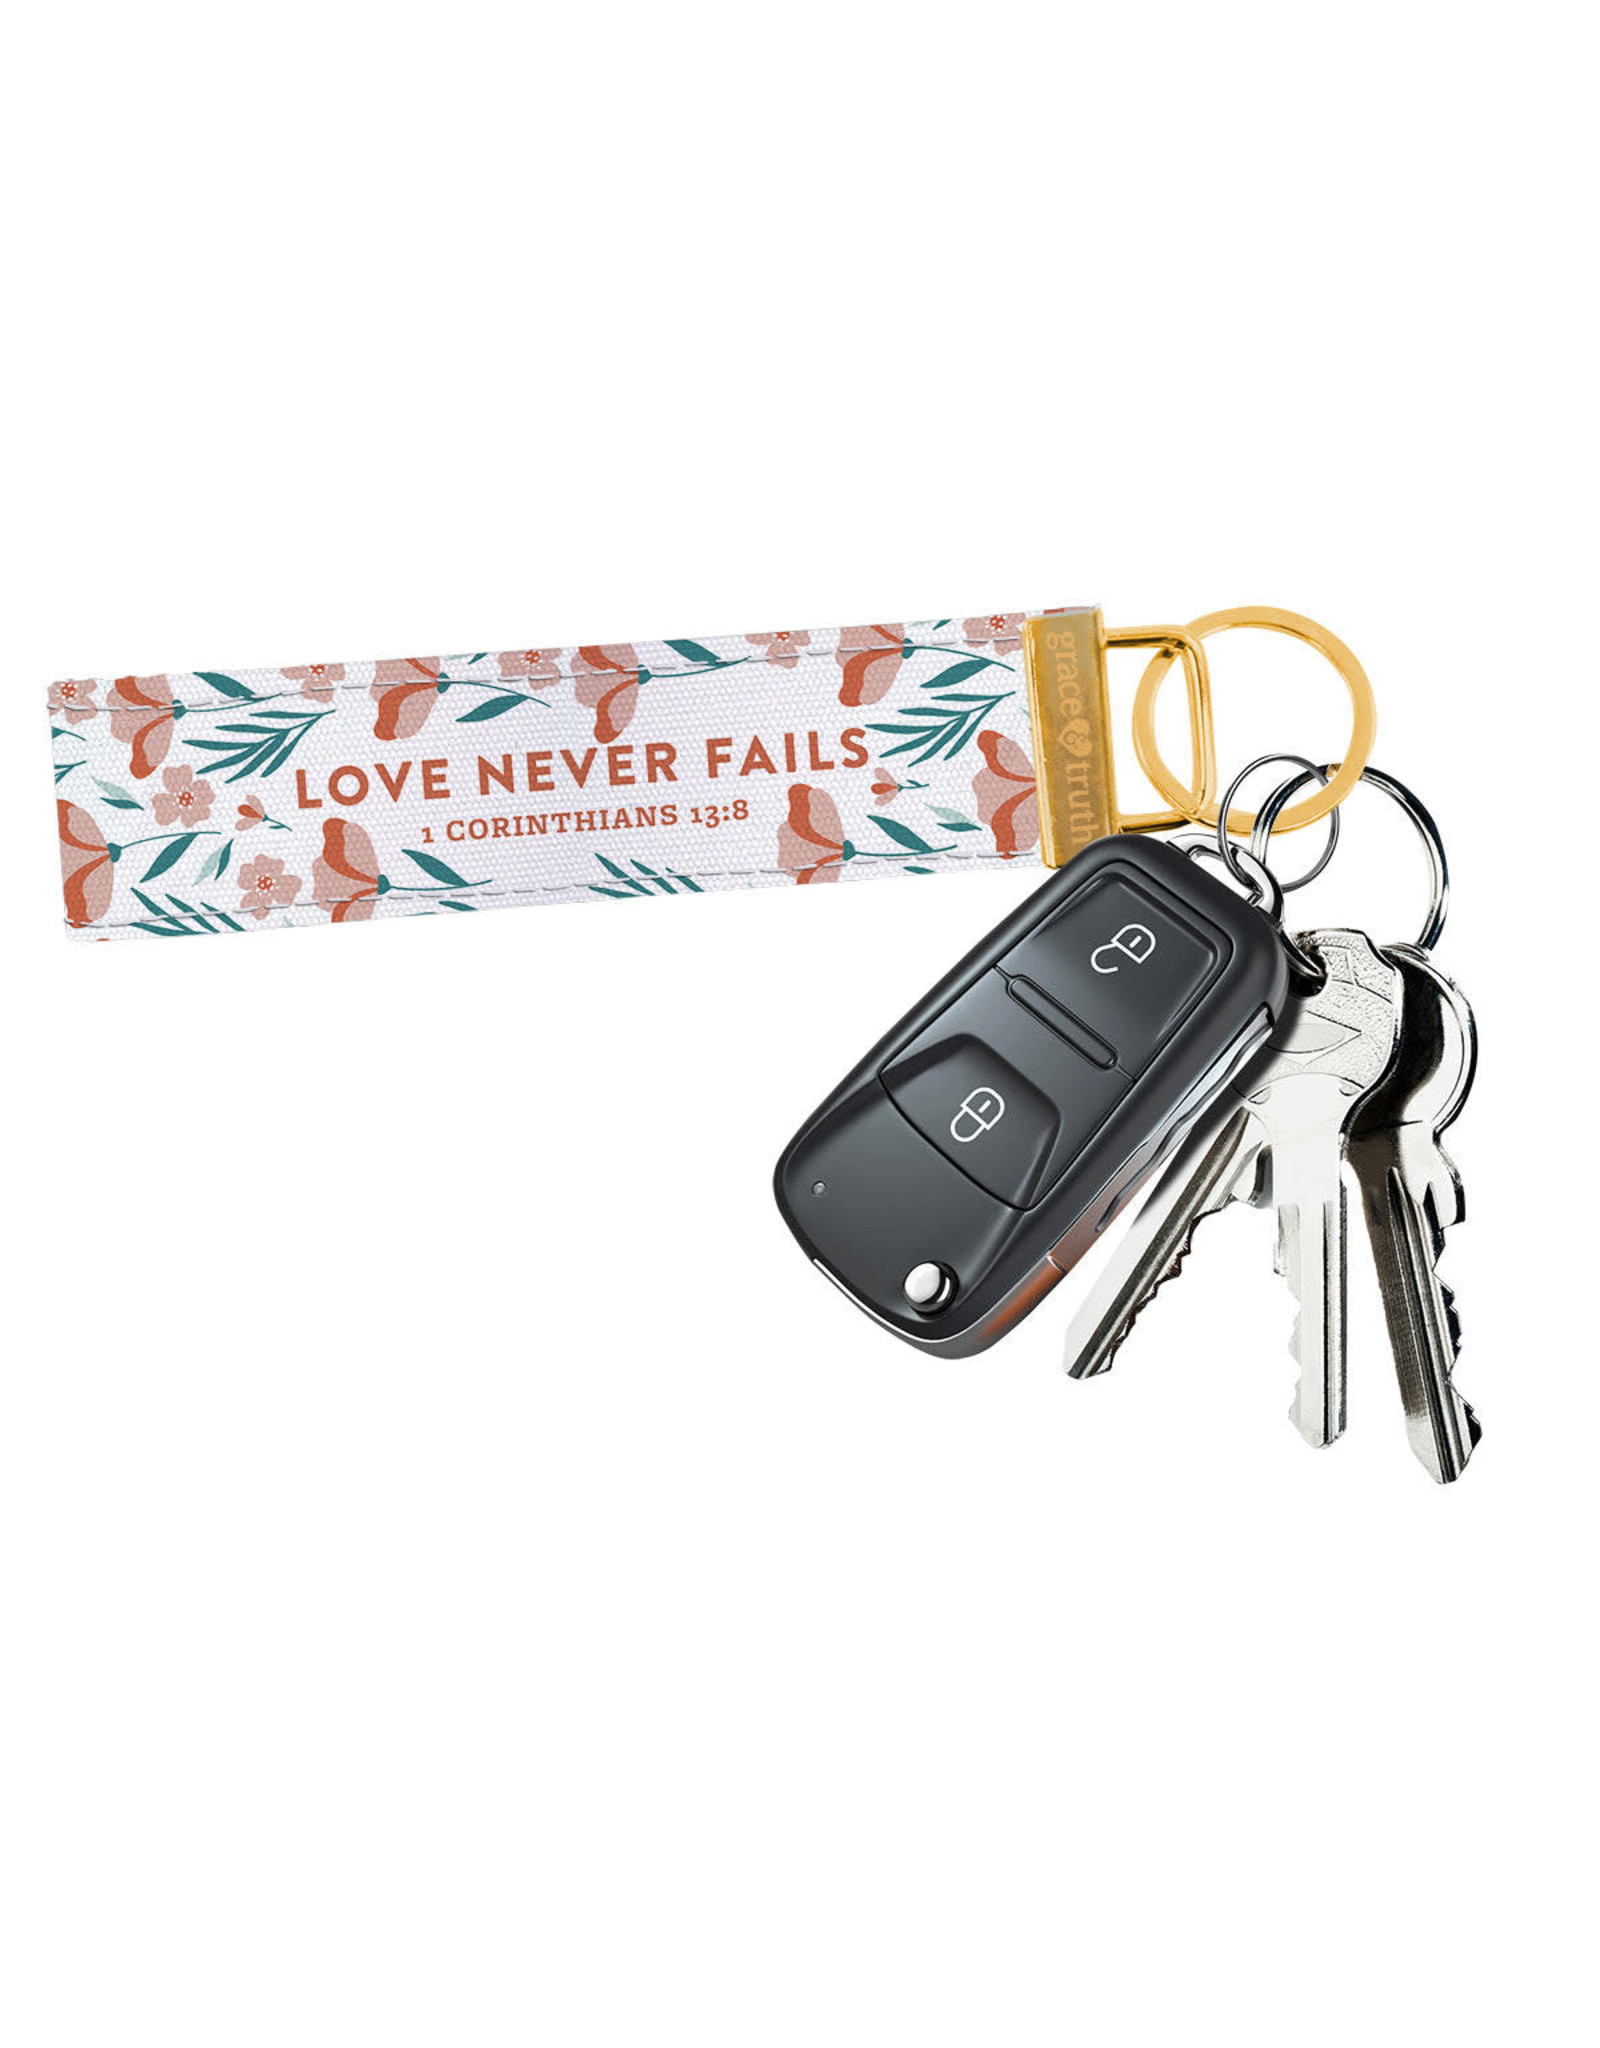 Grace & Truth Keychain Wristlet - Love Never Fails (1 Corinthians 13:8)